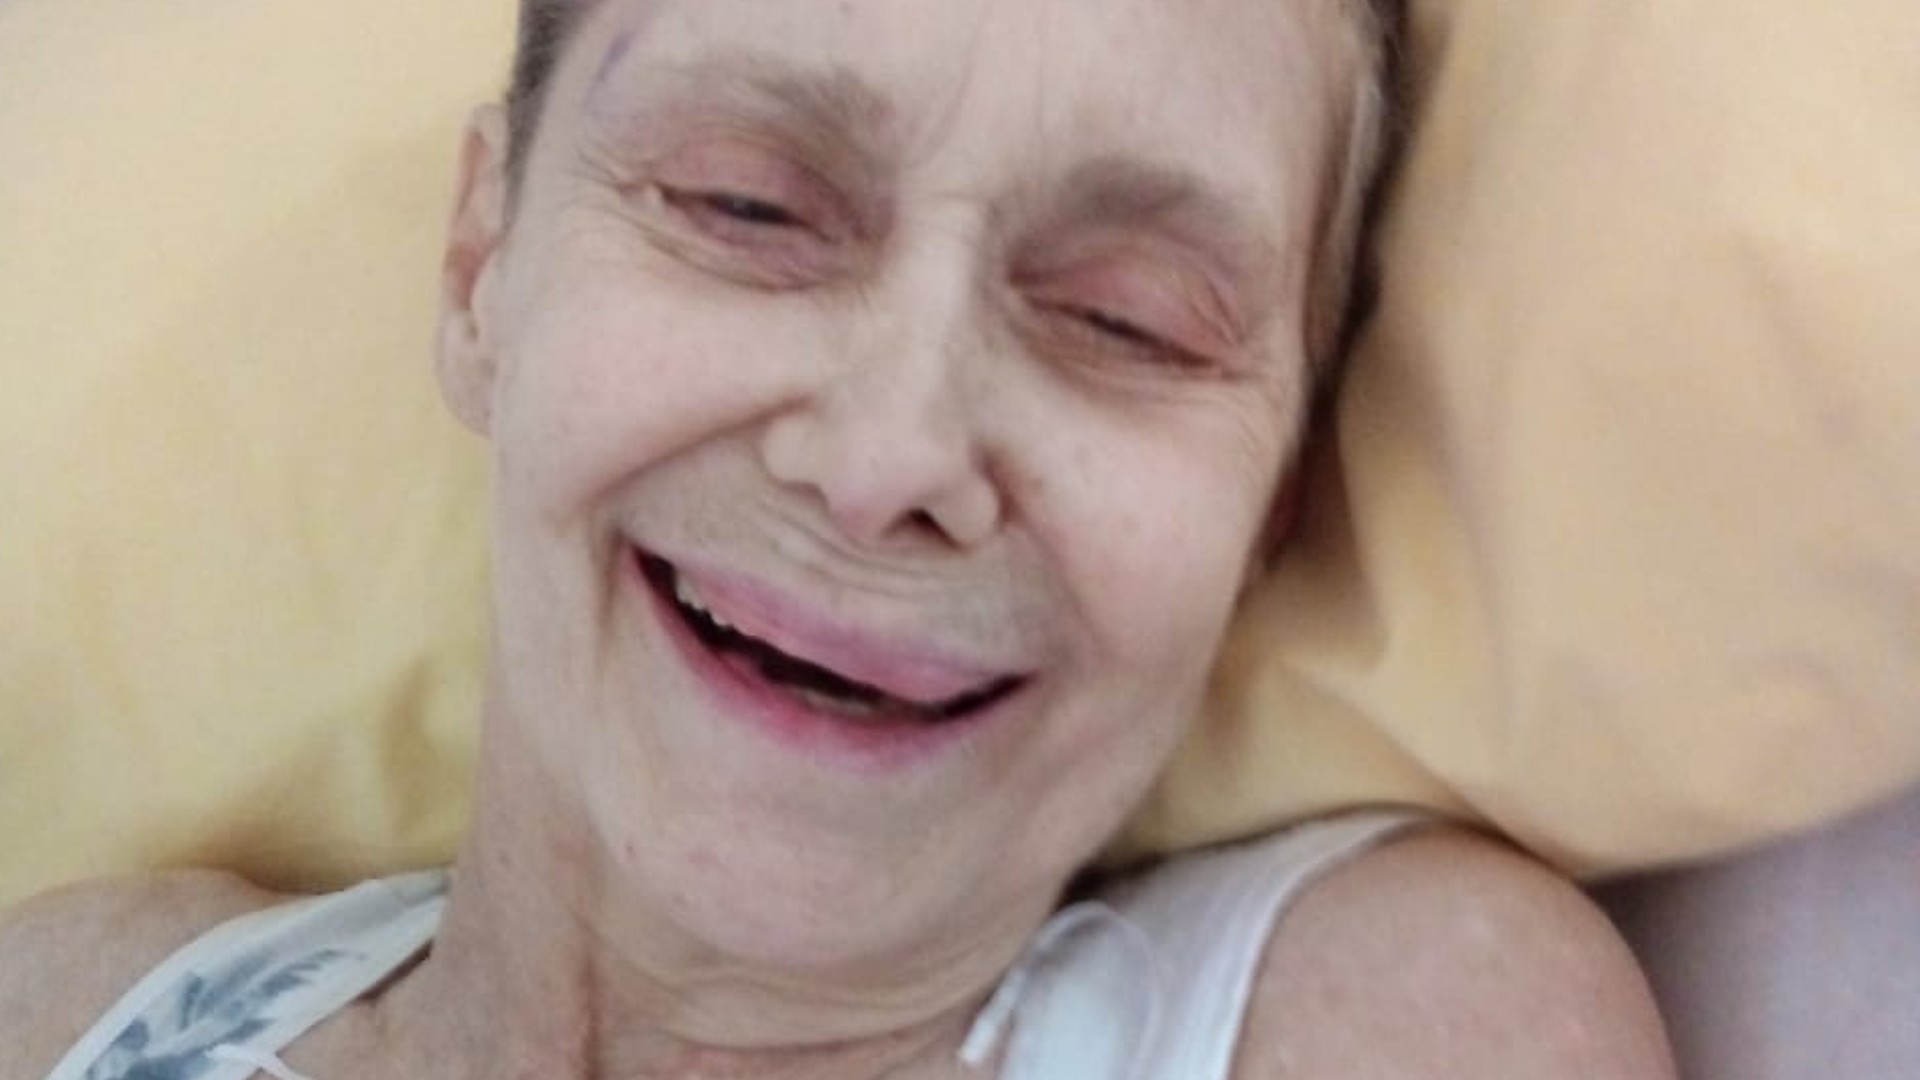 El desgarrador diagnóstico de Camila Perissé: “Tiene Alzheimer avanzado y no hay vuelta atrás”